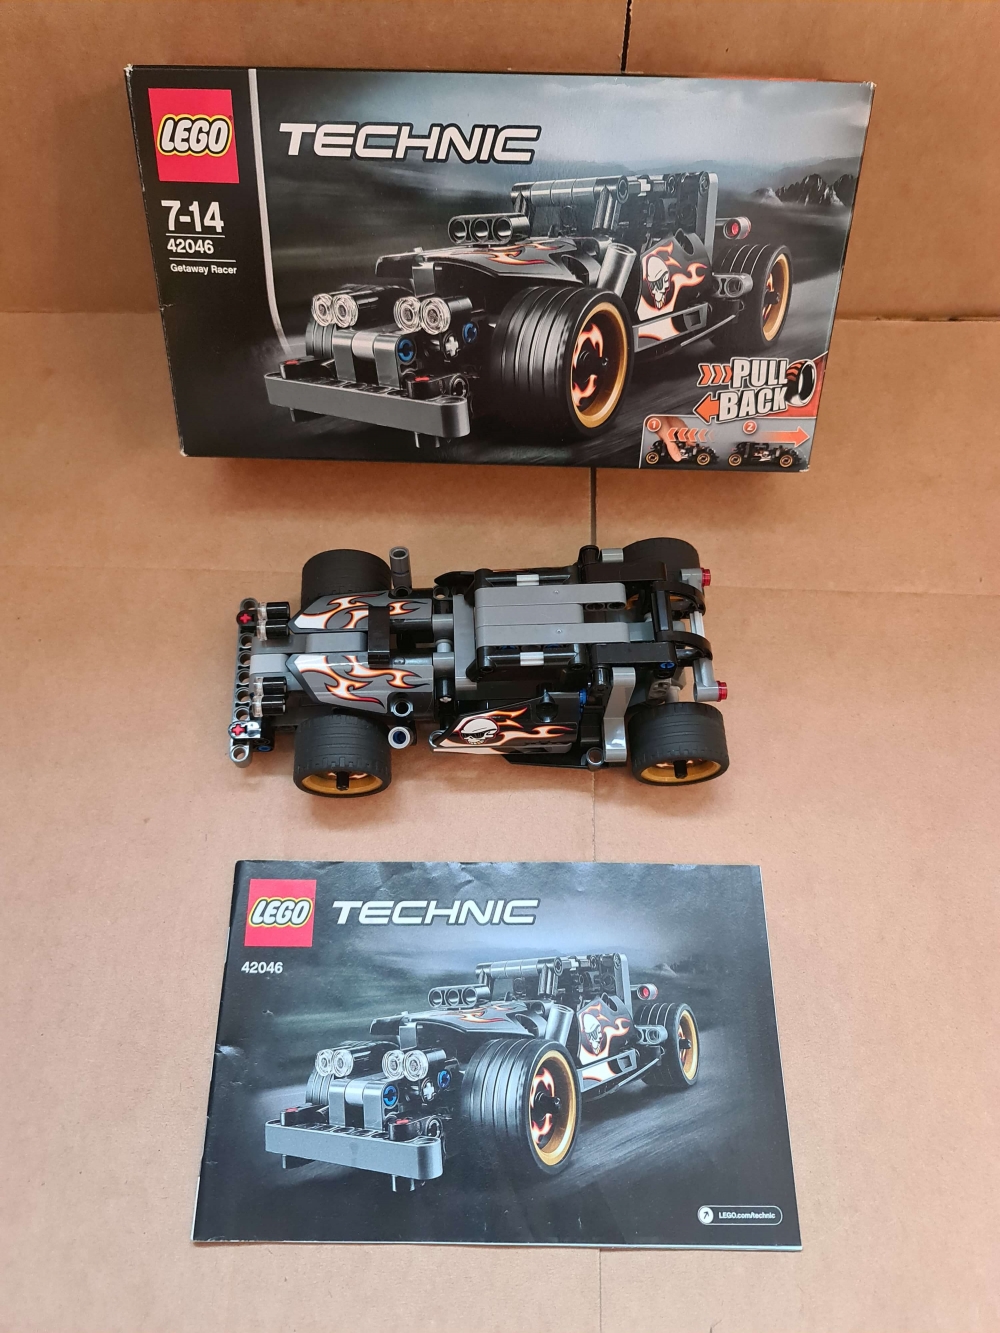 Sett 42046 fra Lego Technic serien.
Som nytt.
Komplett med manual og eske.